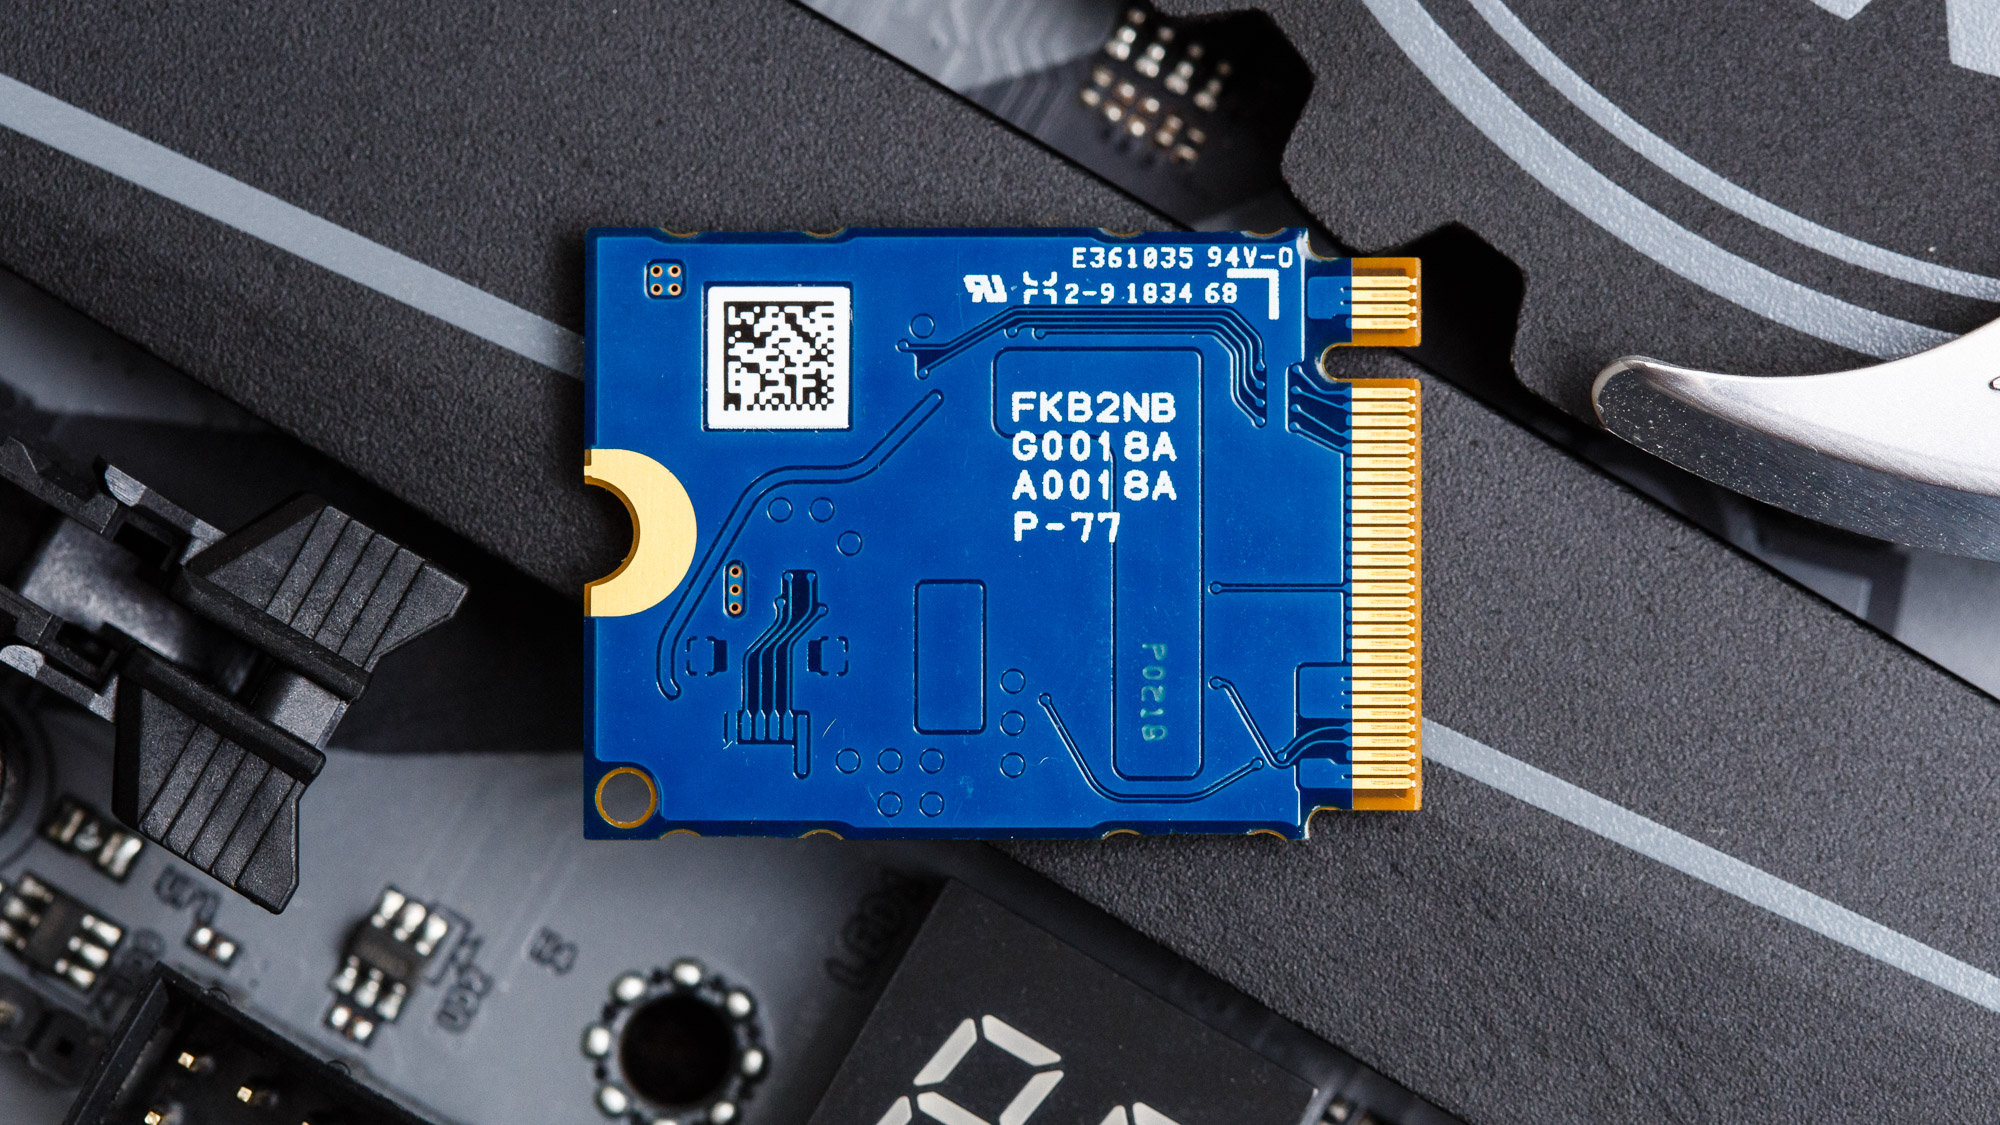 Ổ cứng SSD M2-PCIe 1TB Samsung PM991a NVMe 2230 (SSD cho Surface X